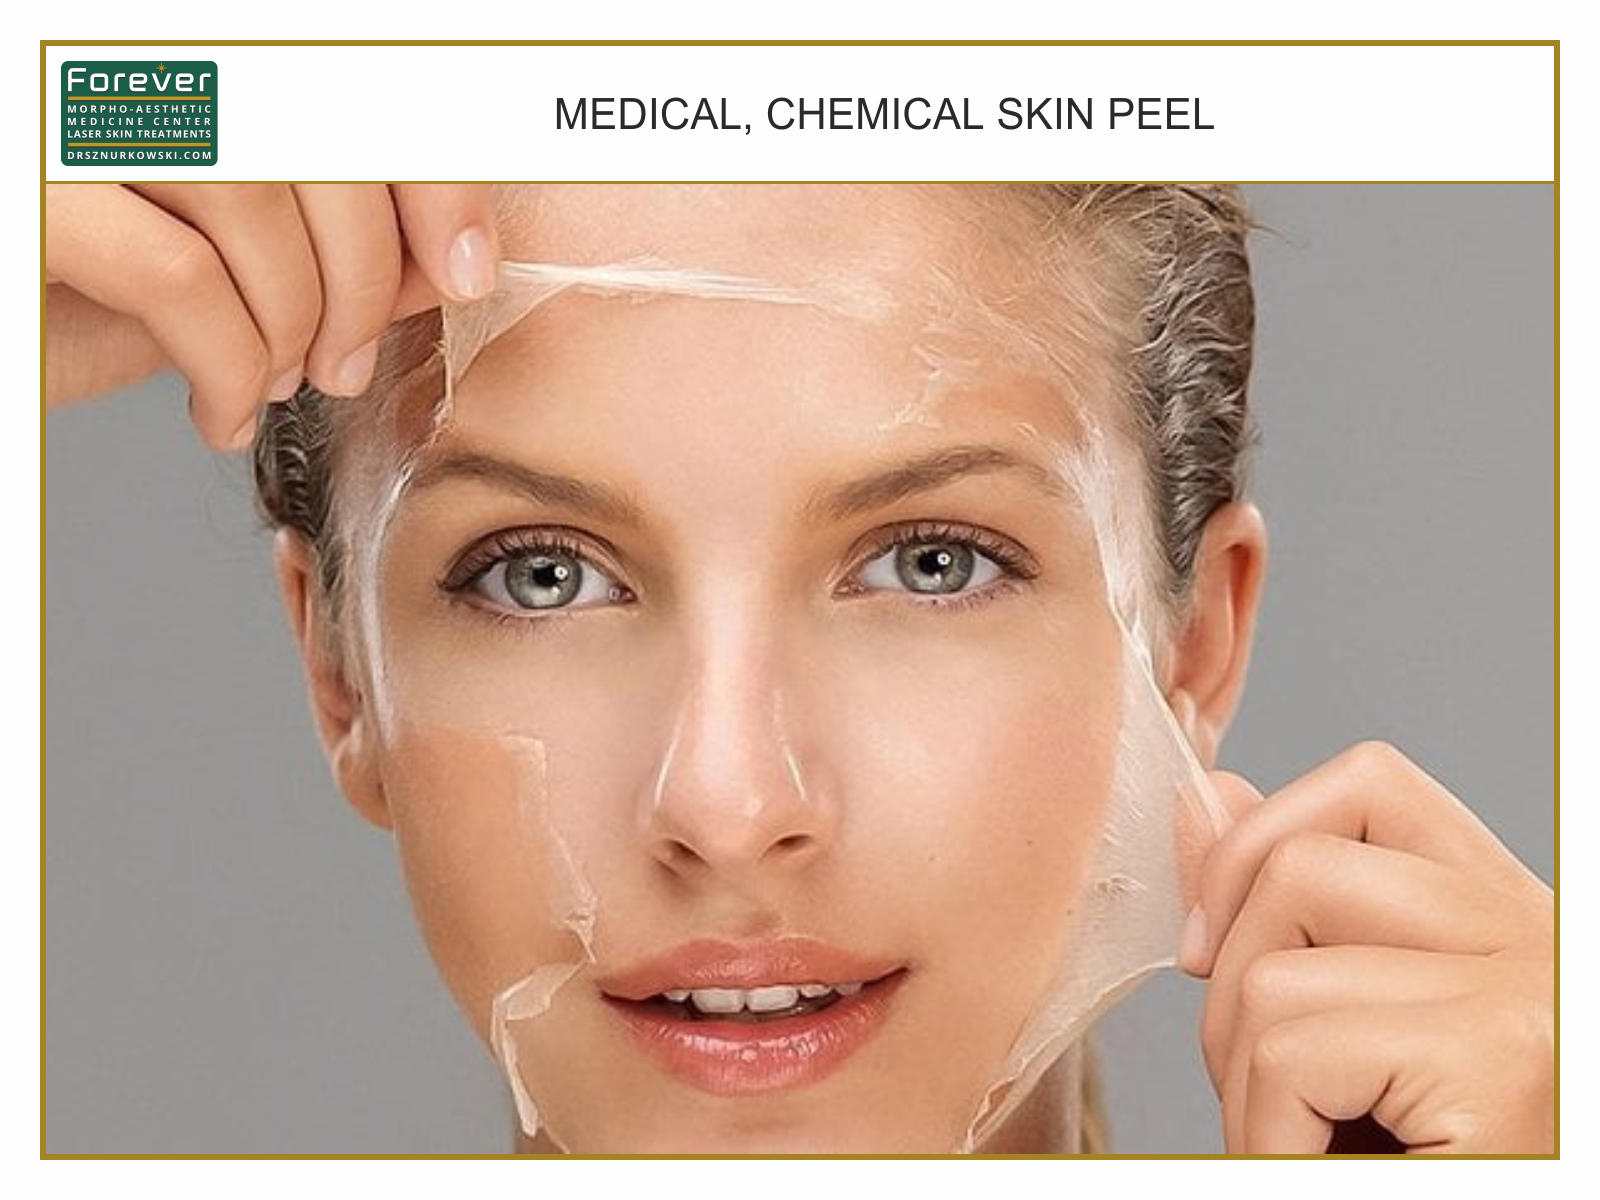 Medical, Chemical Skin Peel 1 (80x60) EN.jpg